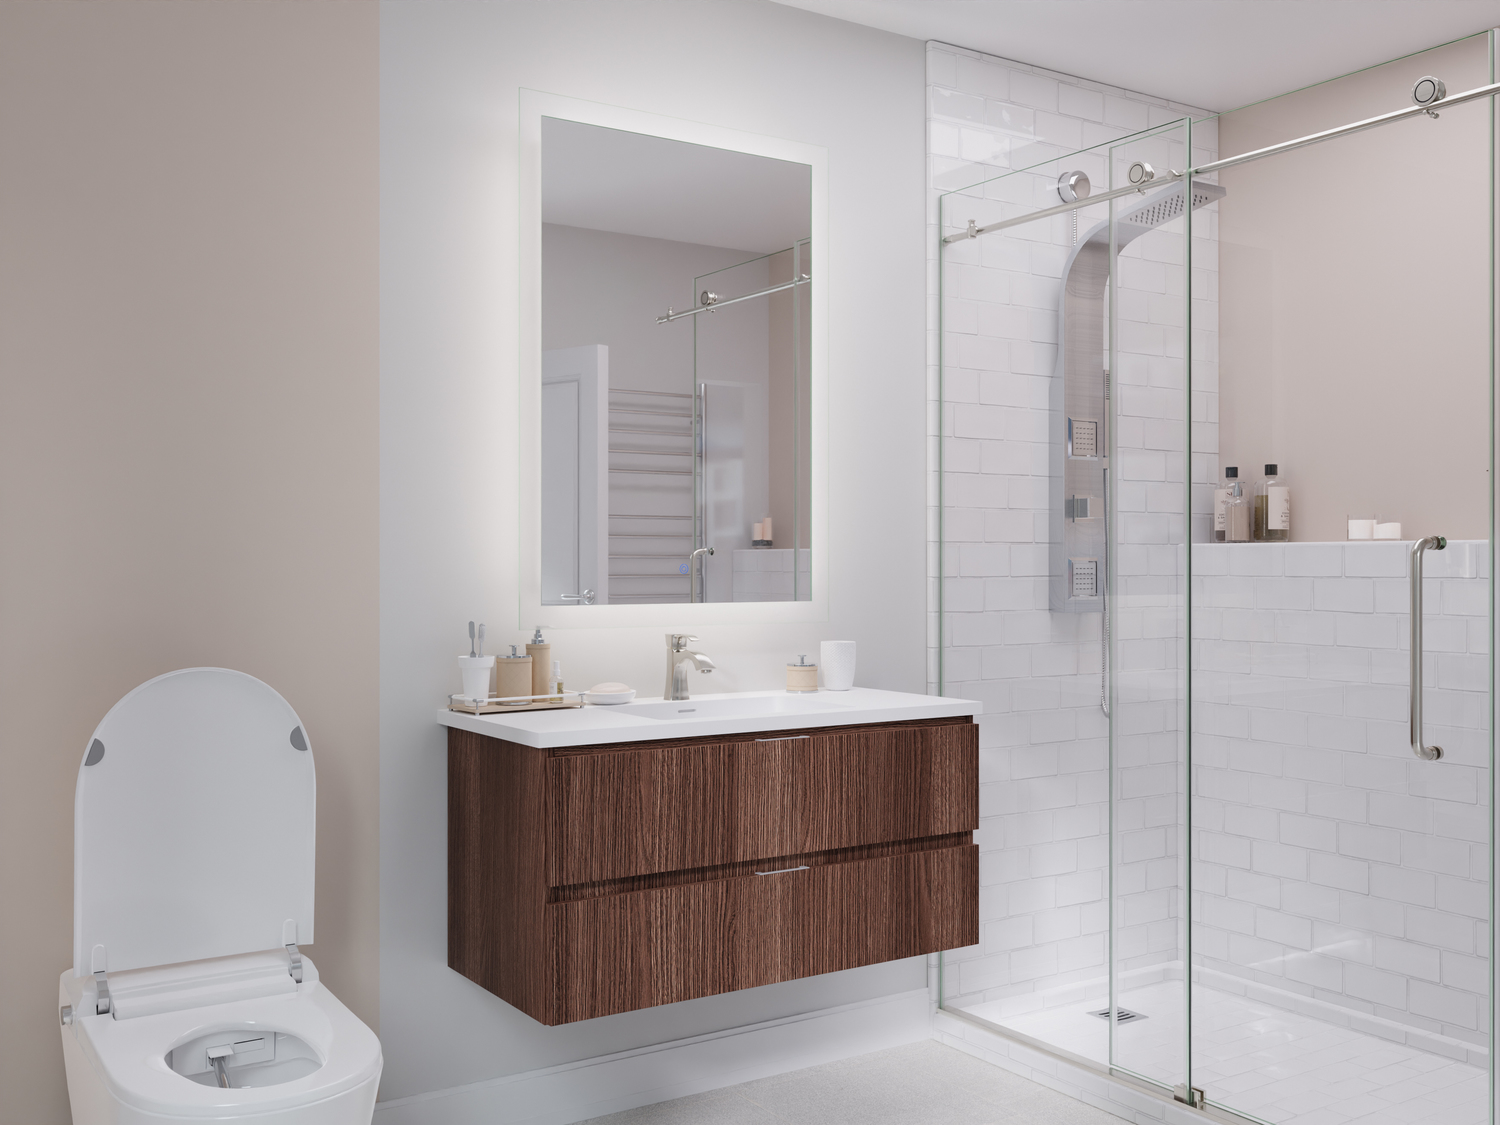 modern walnut bathroom vanity Anzzi BATHROOM - Vanities - Vanity Sets Brown